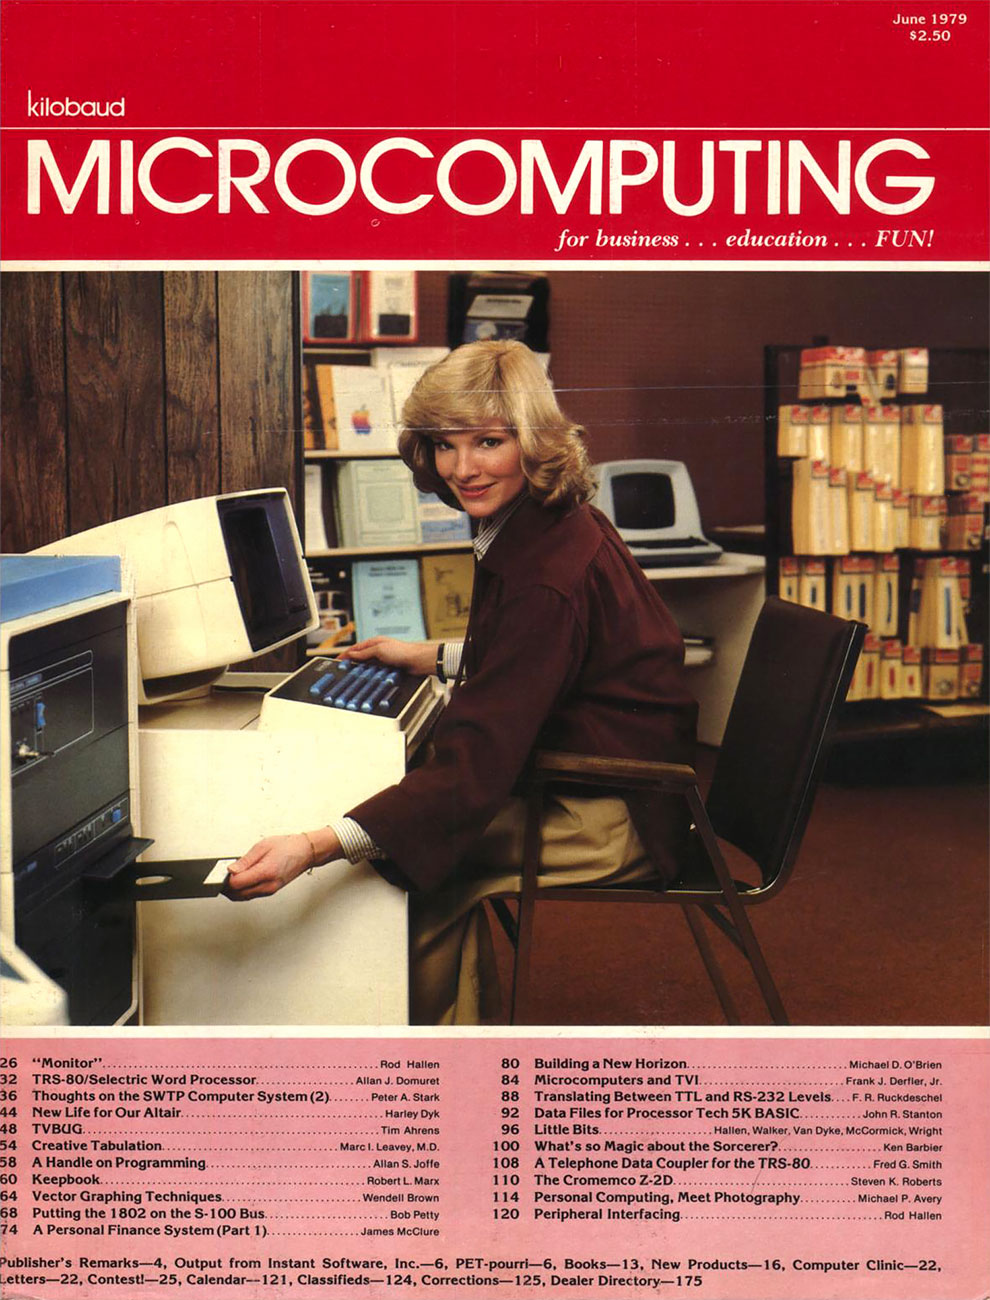 Обложки компьютерных журналов 80-90-х годов